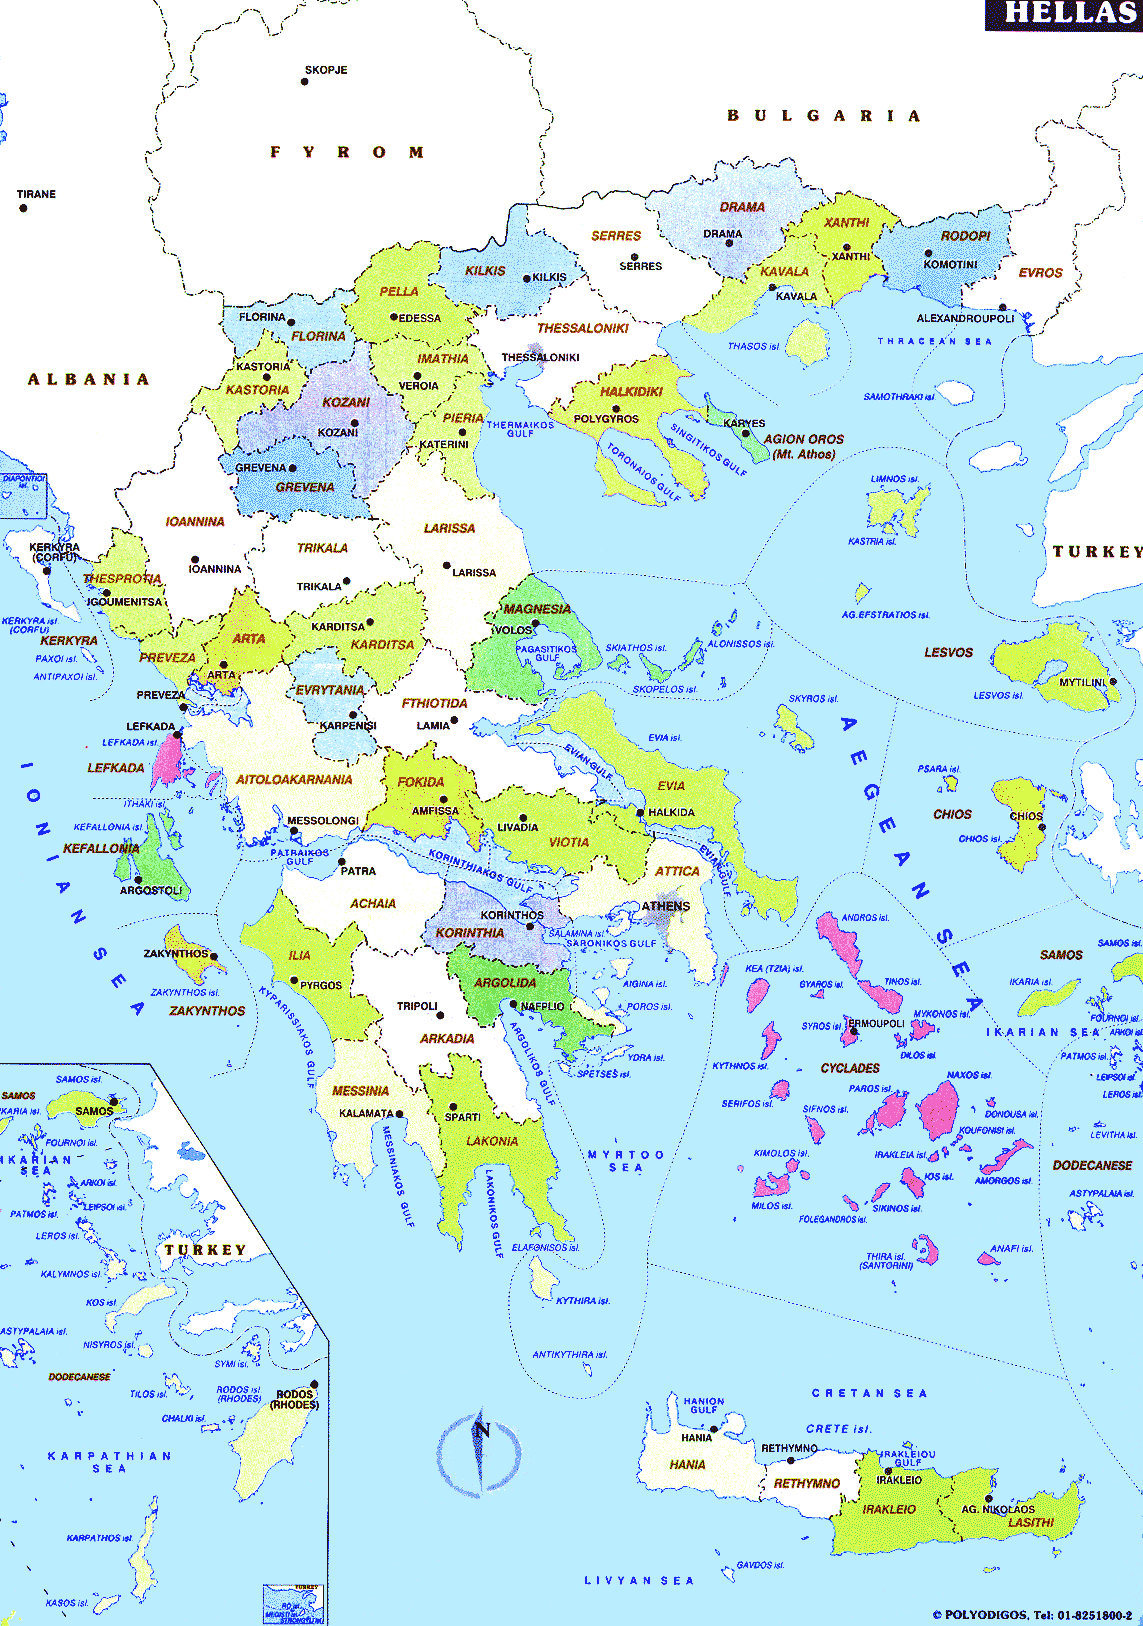 19163450-5-hy-lam-map